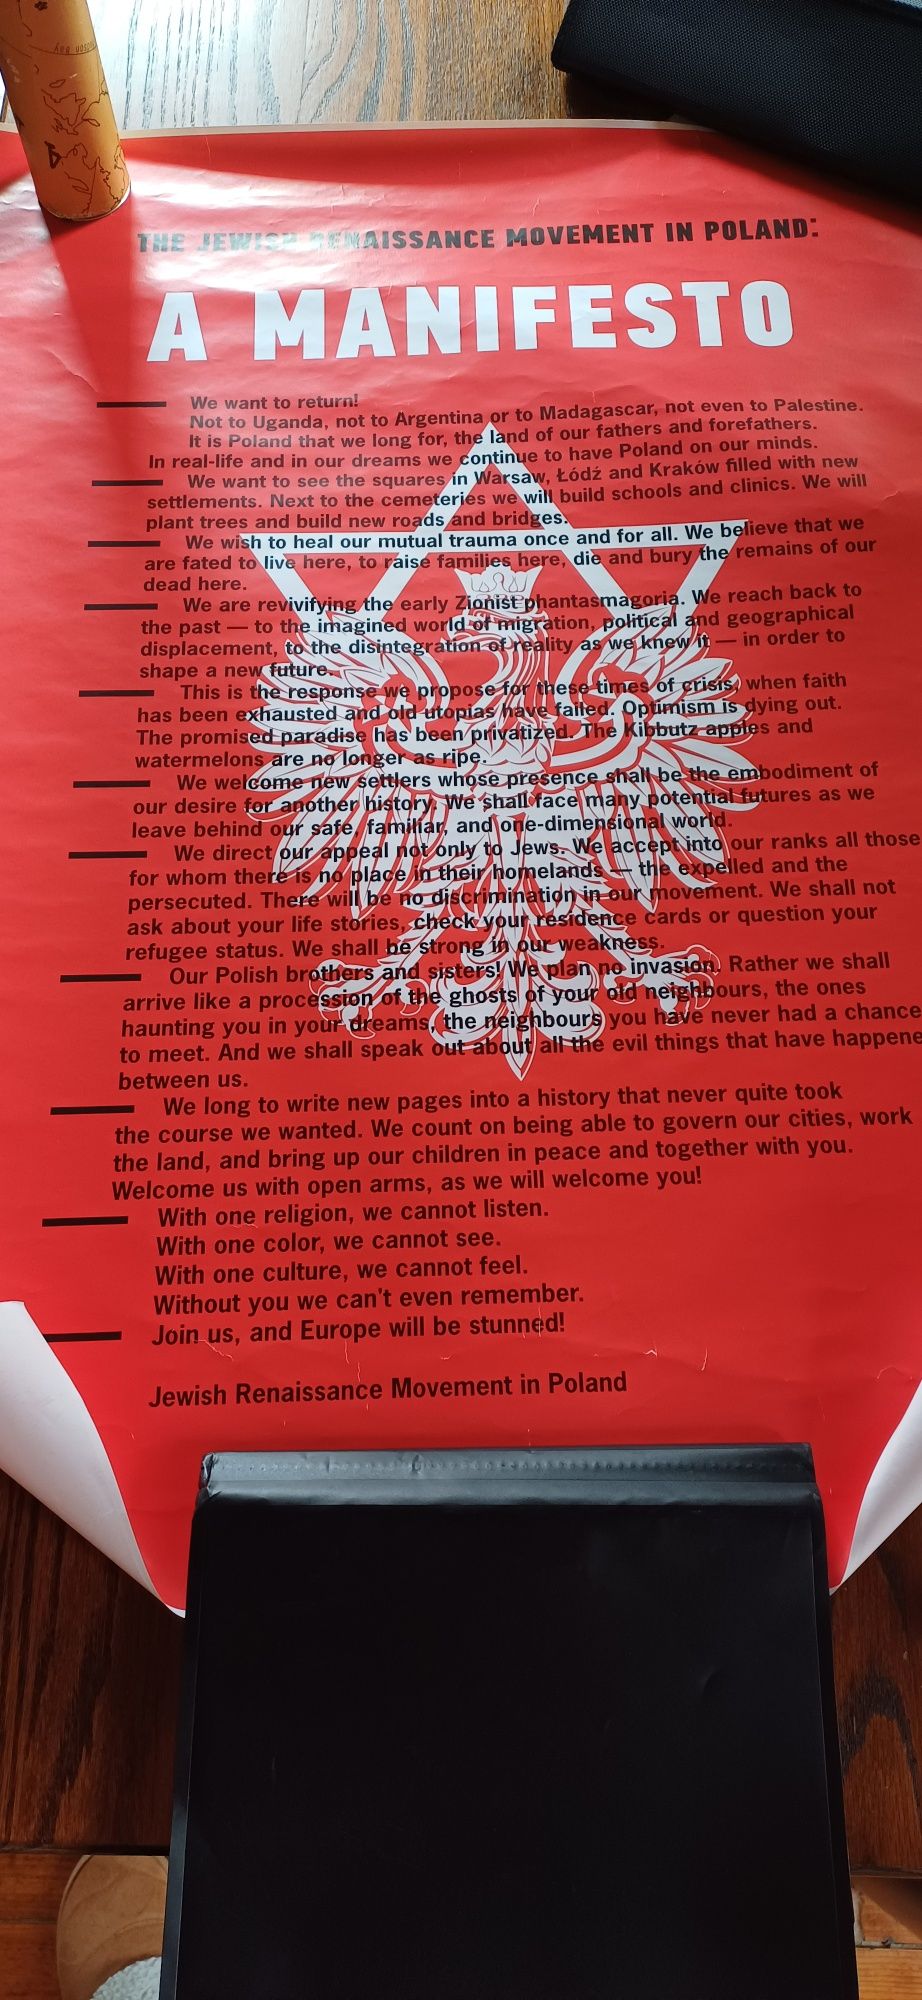 Movimento de Renascimento Judaico na Polónia